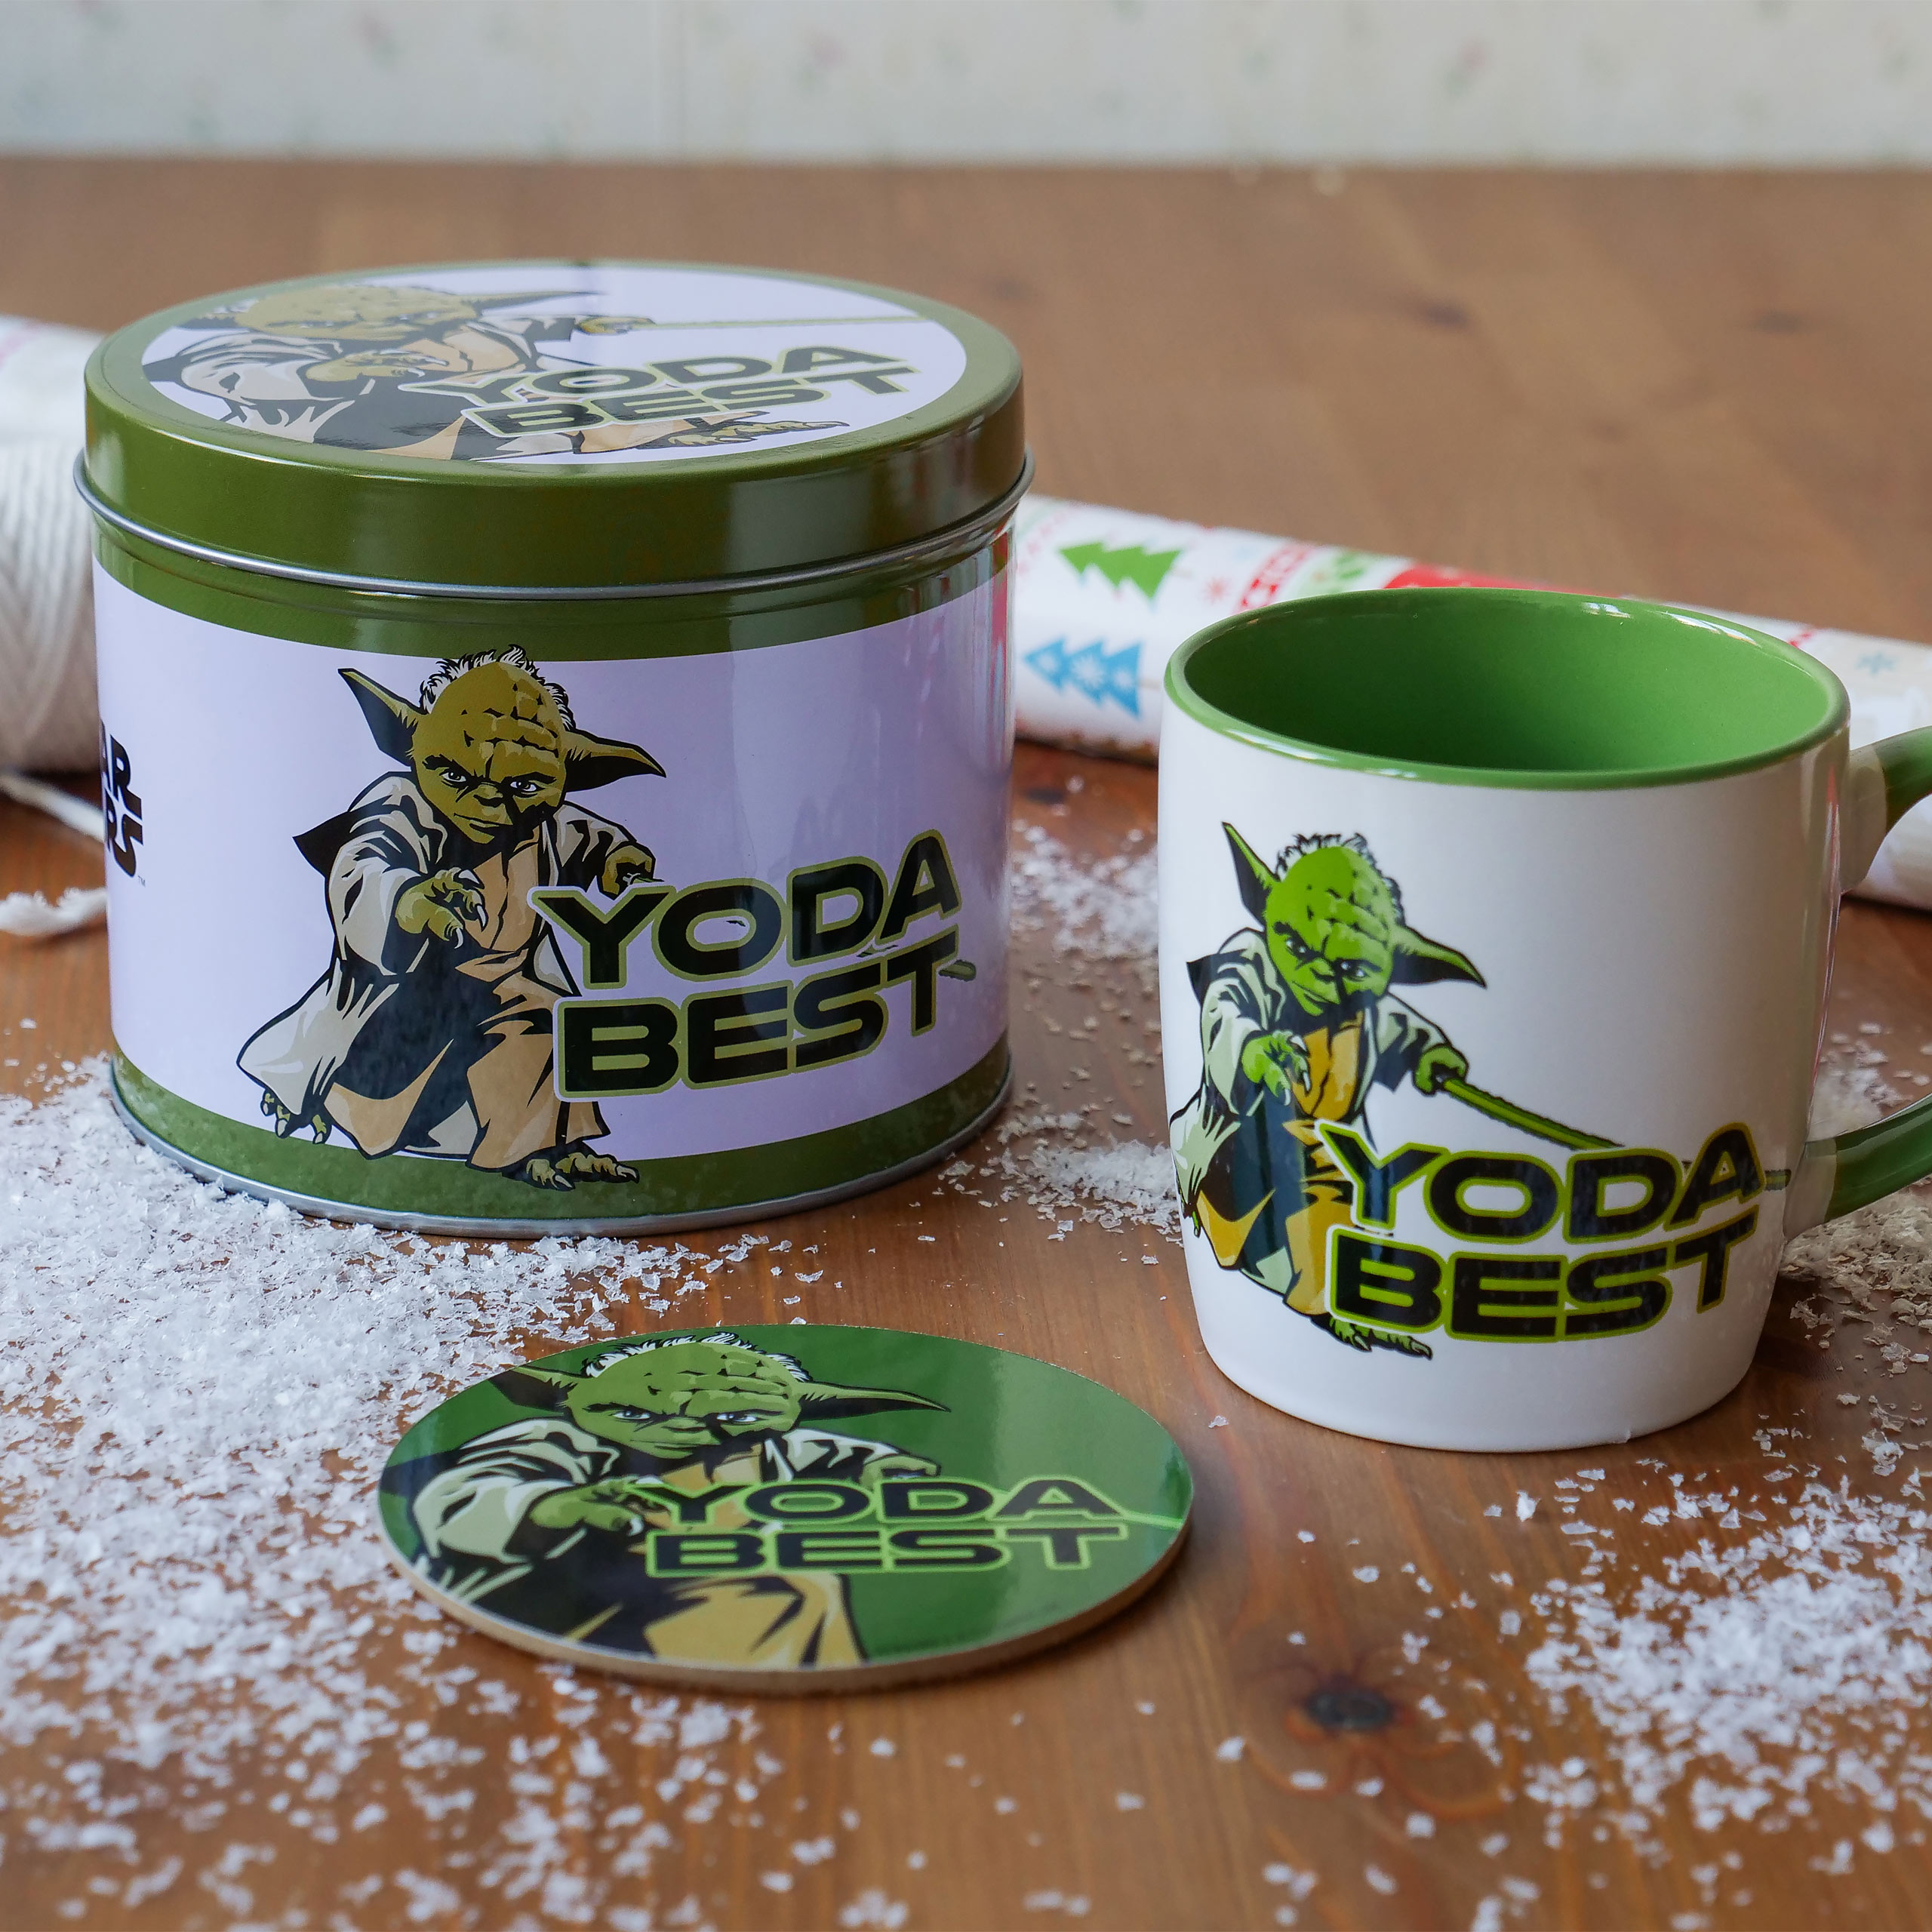 Star Wars - Yoda Best Geschenkset